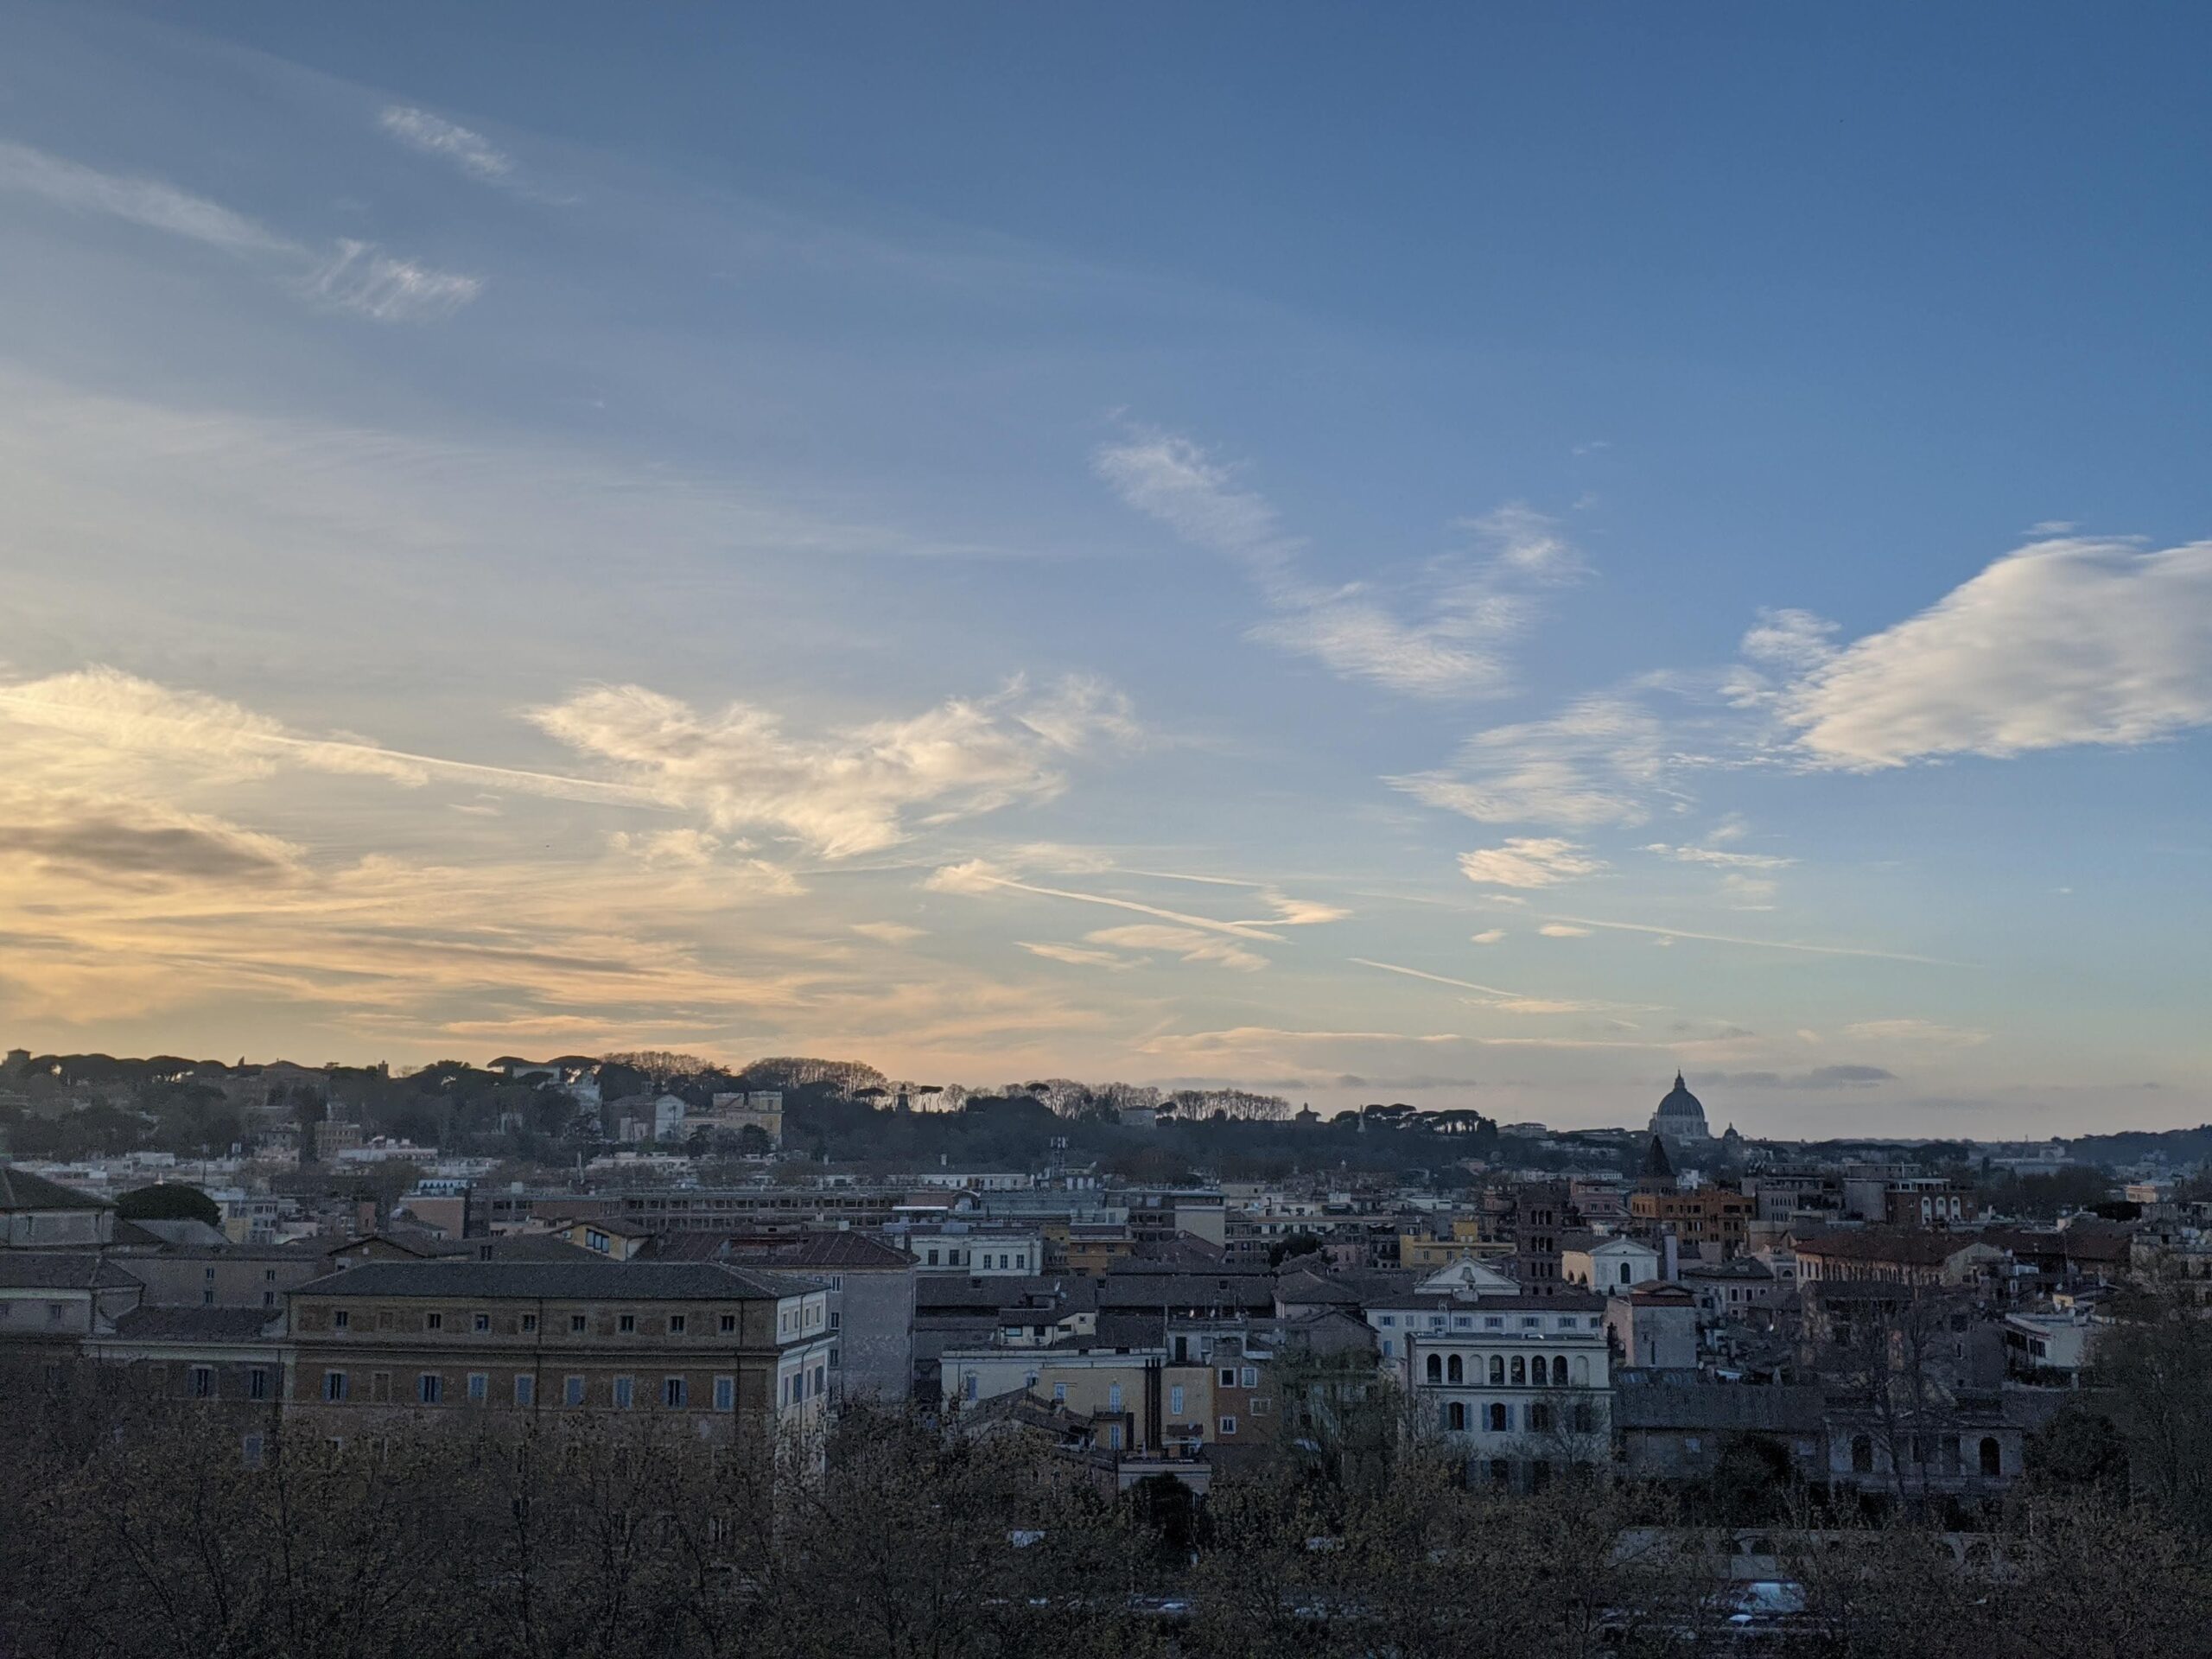 A imagem apresenta uma vista panorâmica da cidade de Roma ao entardecer, com inúmeras luzes já acesas, iluminando o tecido urbano. O céu acima da linha do horizonte mostra gradientes de azul e laranja, enquanto árvores despidas de folhas em primeiro plano adicionam um contraste dramático.